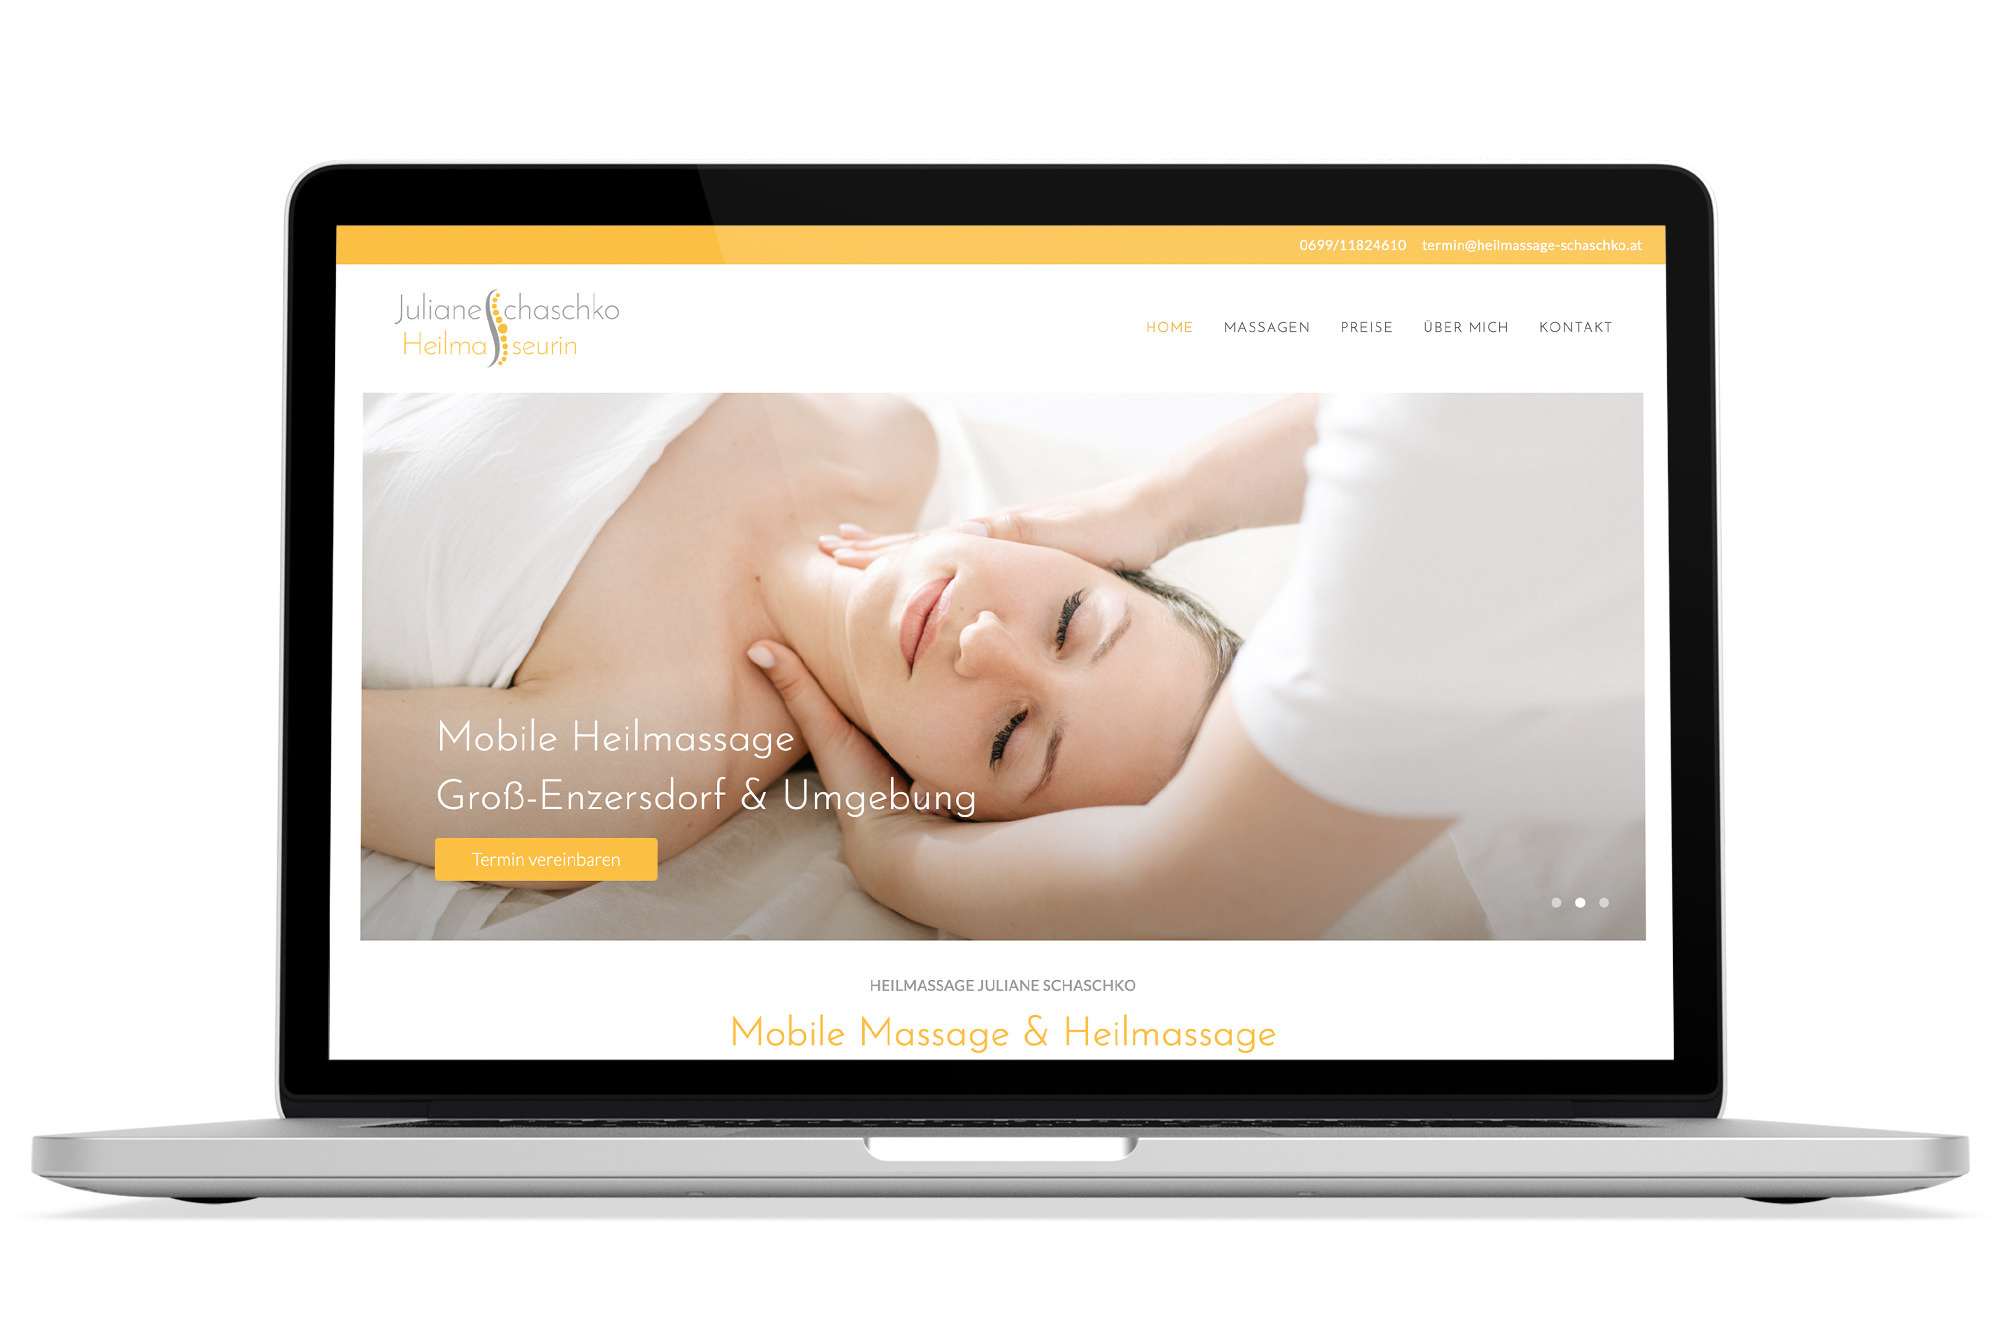 Webdesign Beispiel: Responsive Webdesign, WordPress für Massage